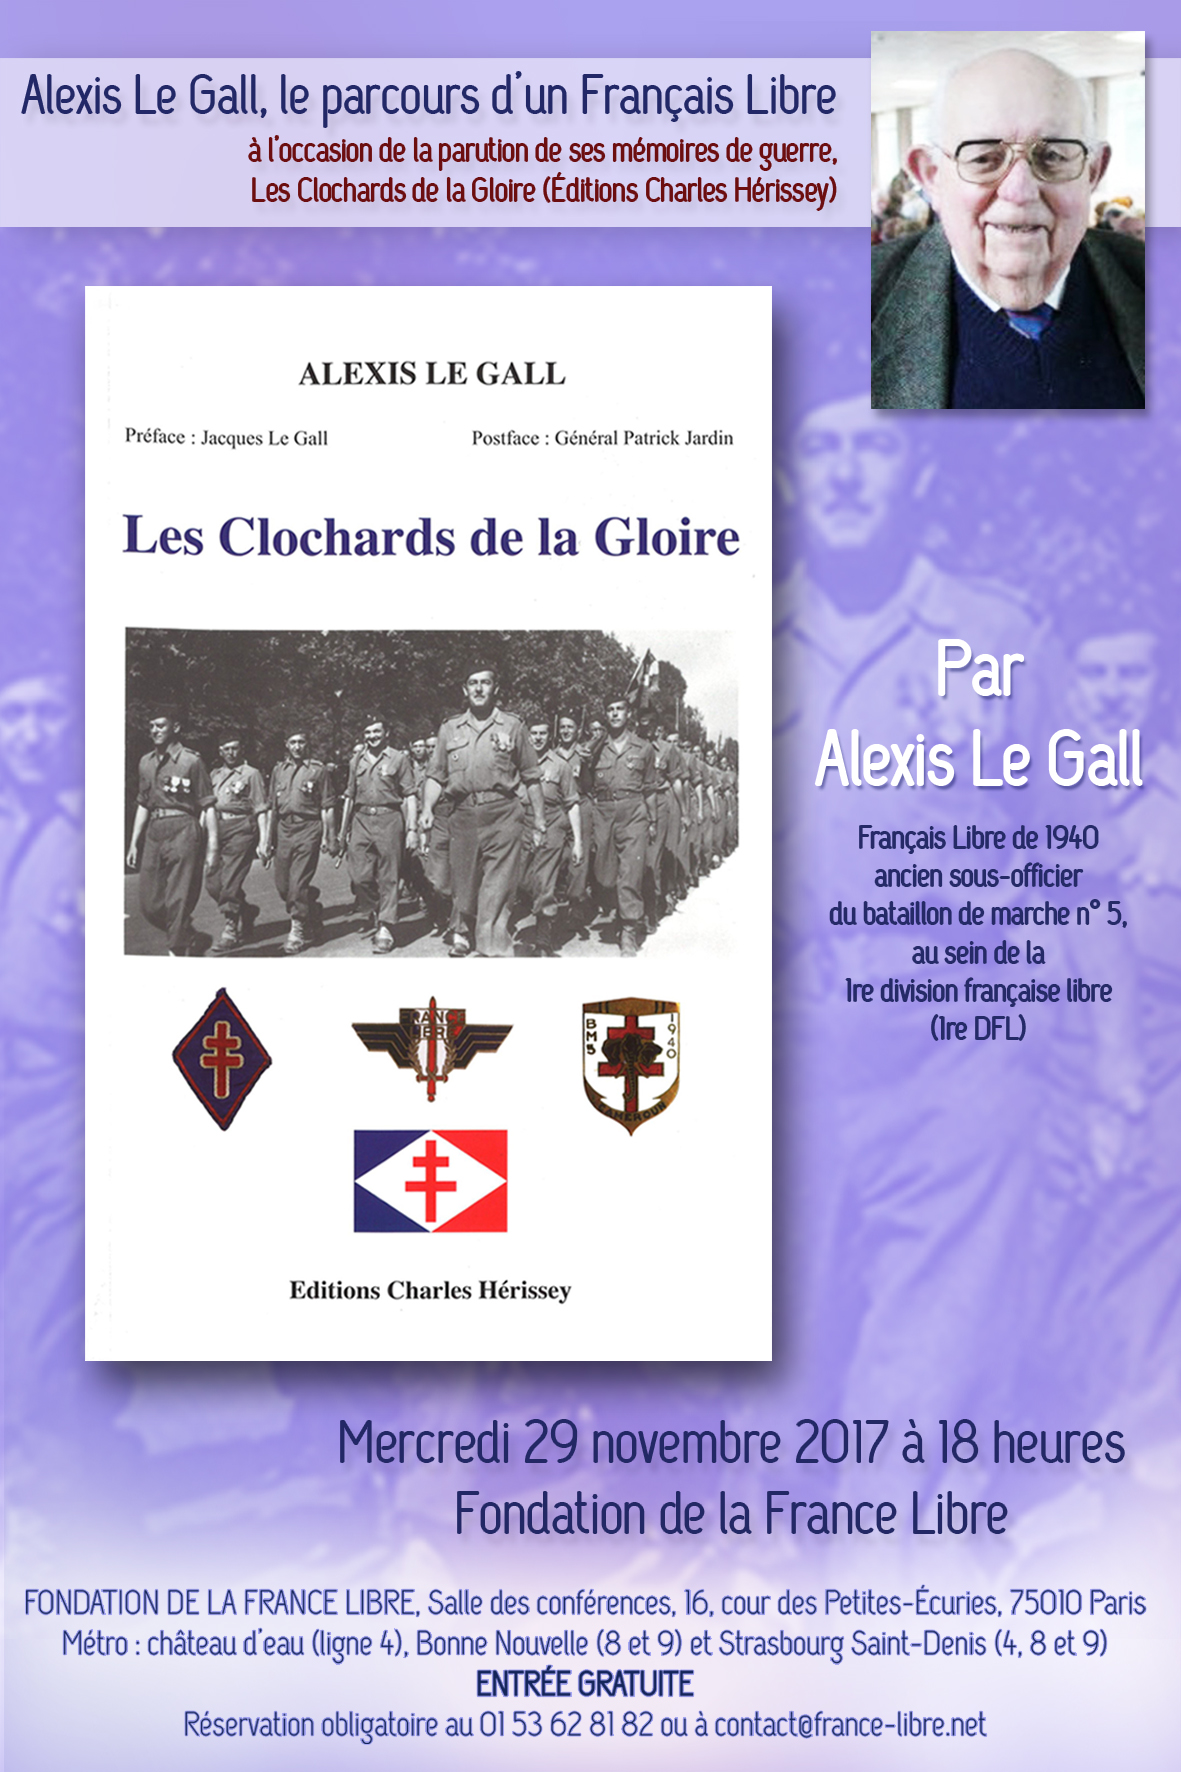 Alexis Le Gall, le parcours d’un Français Libre (conférence)